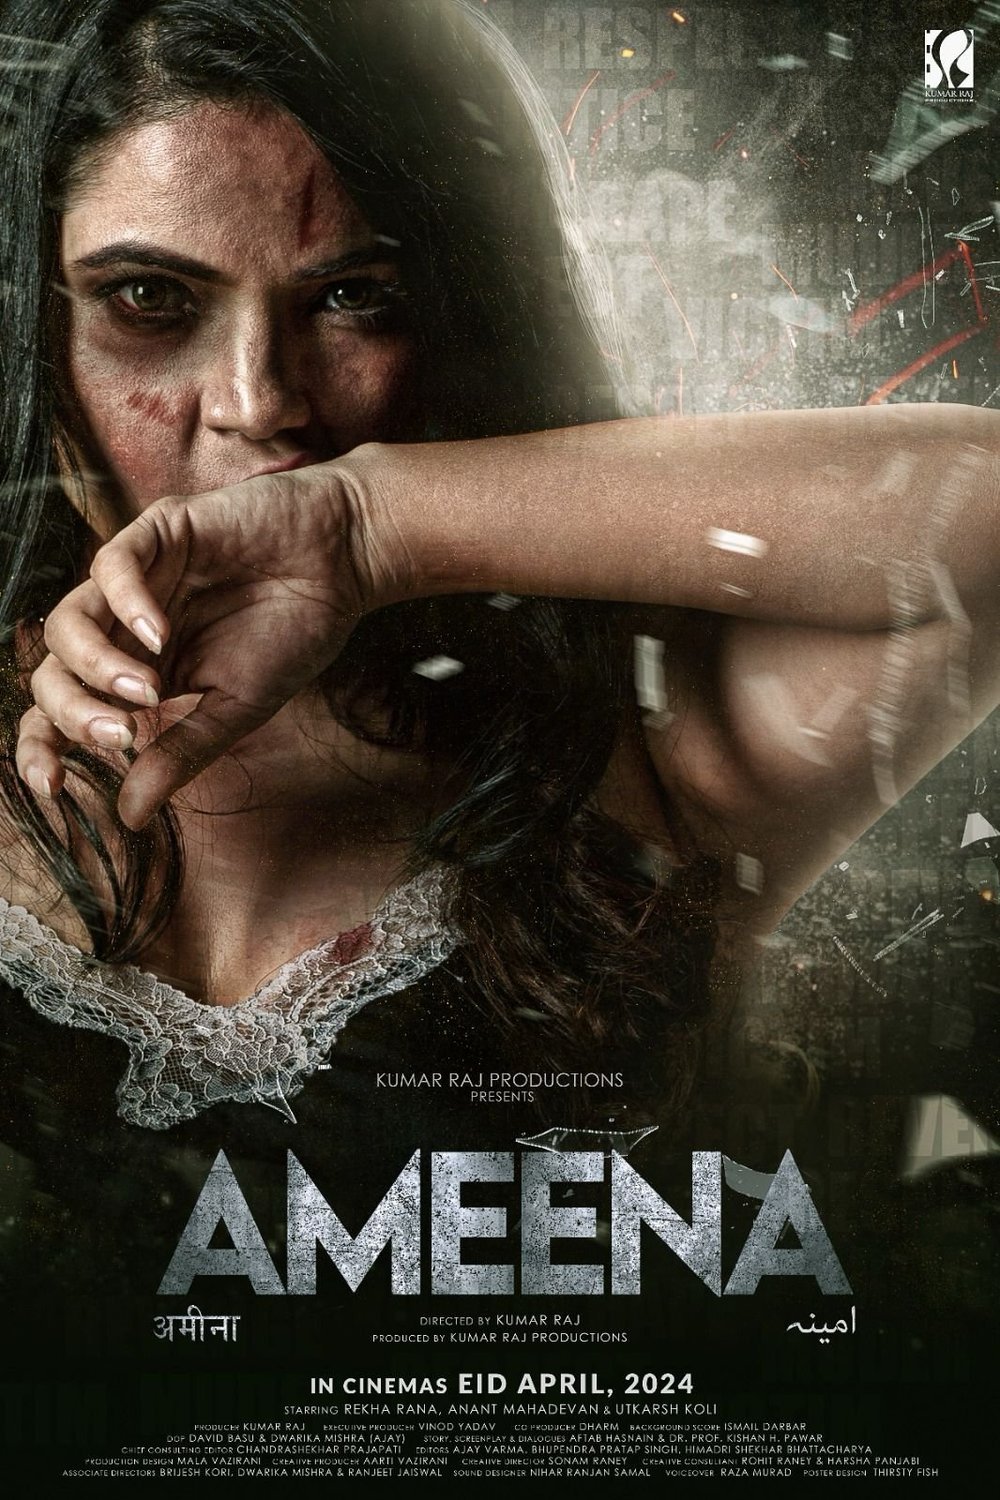 Hindi poster of the movie Ameena